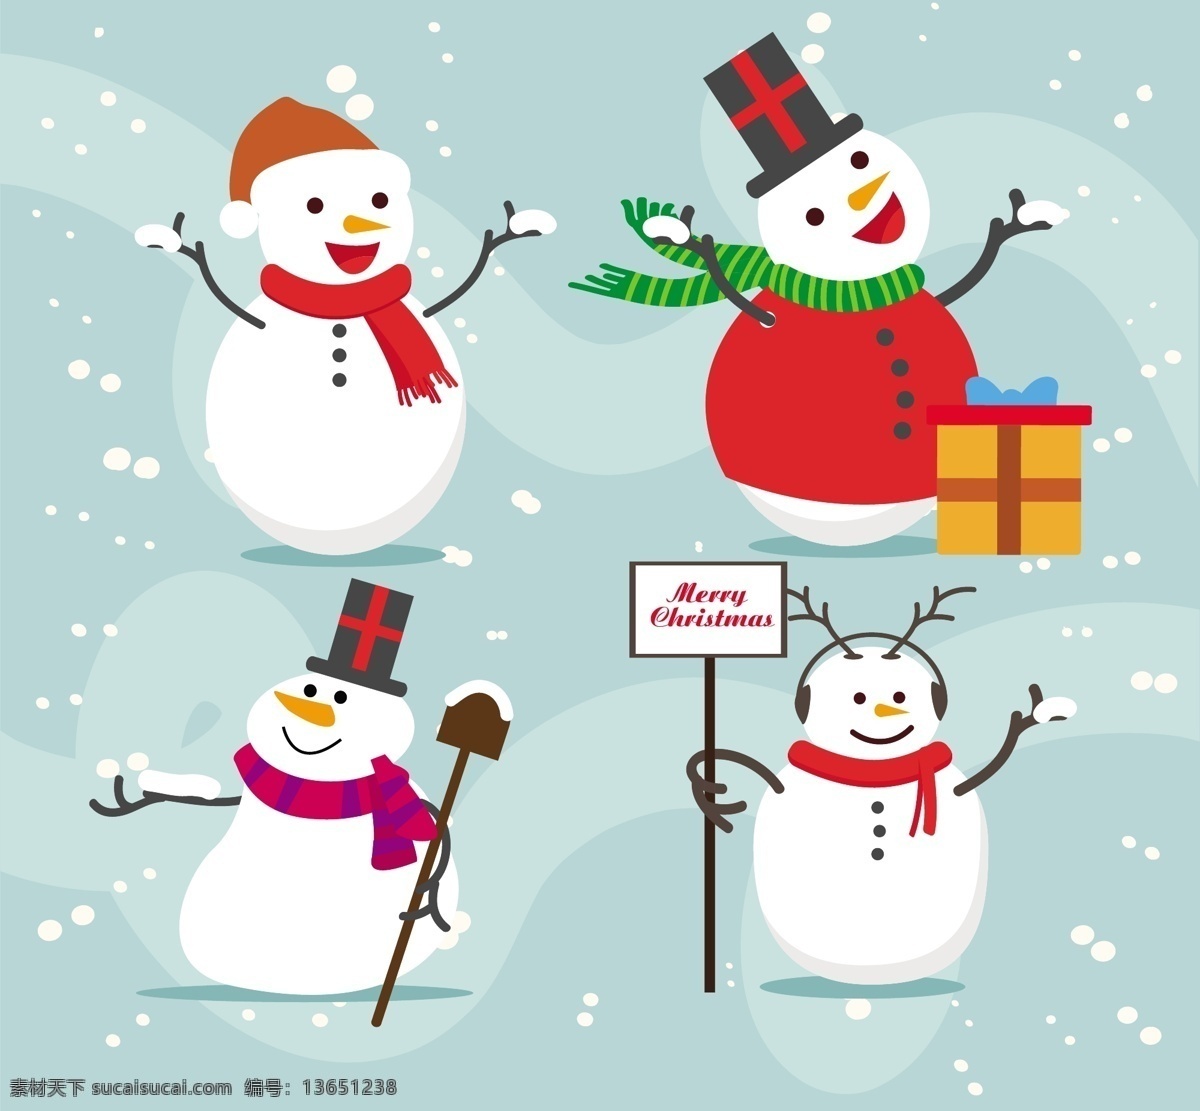 可爱雪人素材 可爱雪人 雪人 扁平化雪人 矢量素材 圣诞节 圣诞